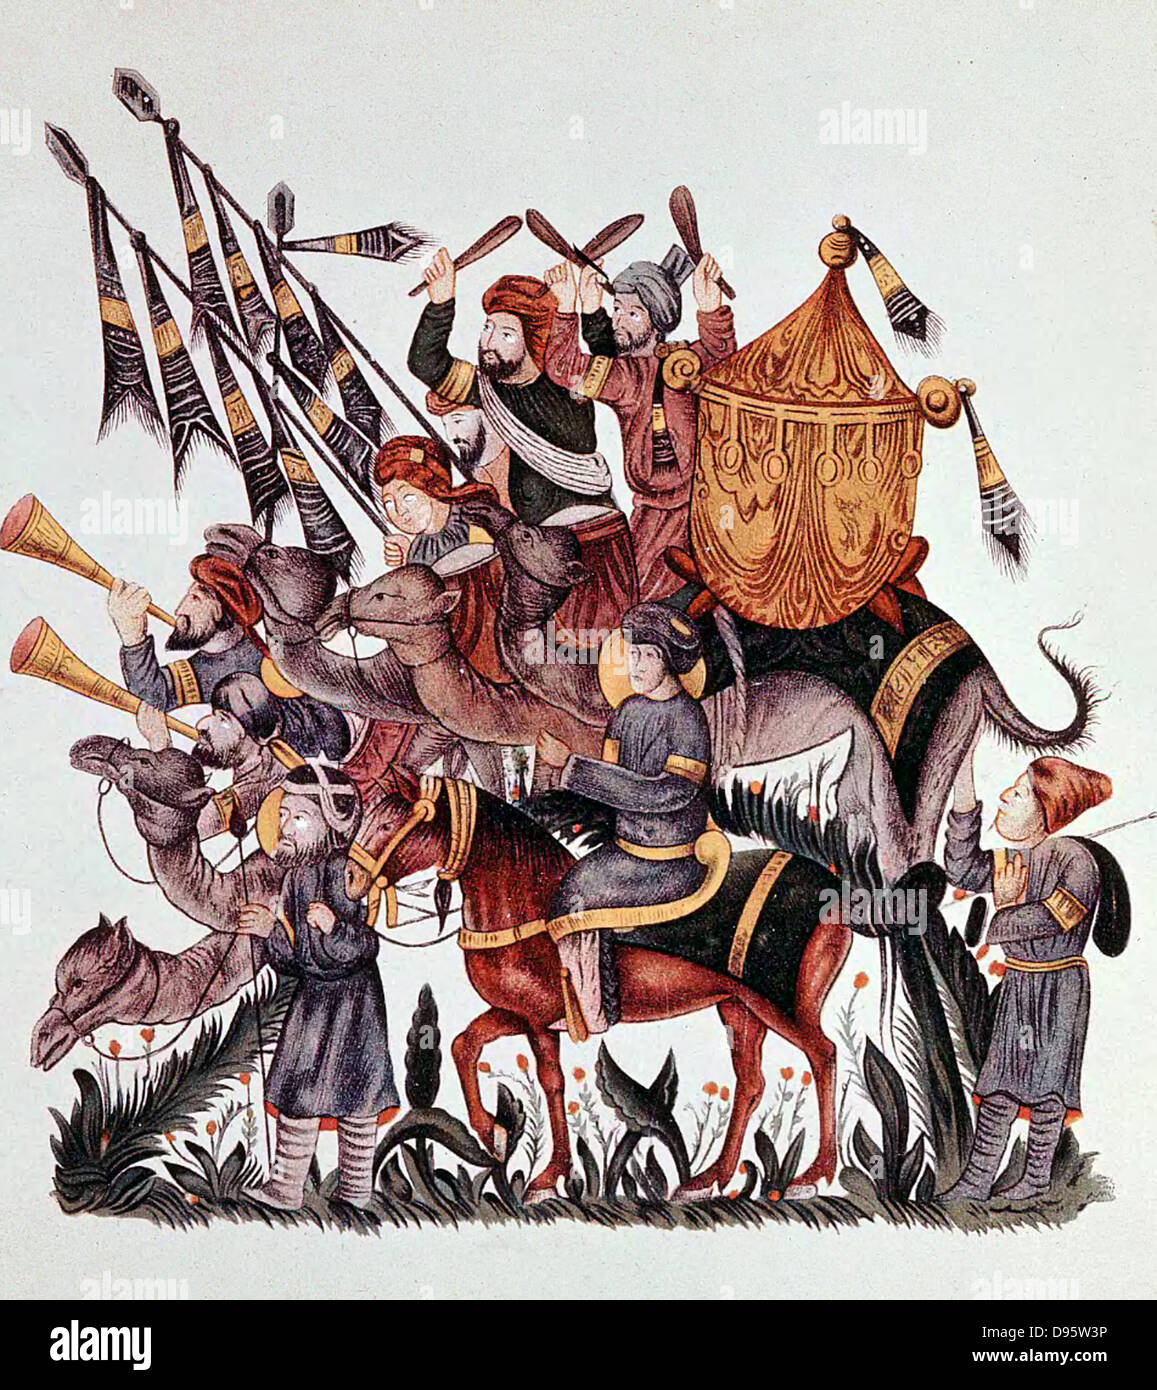 Abanderados, percusionistas y trompetistas de un ejército sarraceno montados en camellos y caballos. Manuscrito árabe del siglo 13. Foto de stock